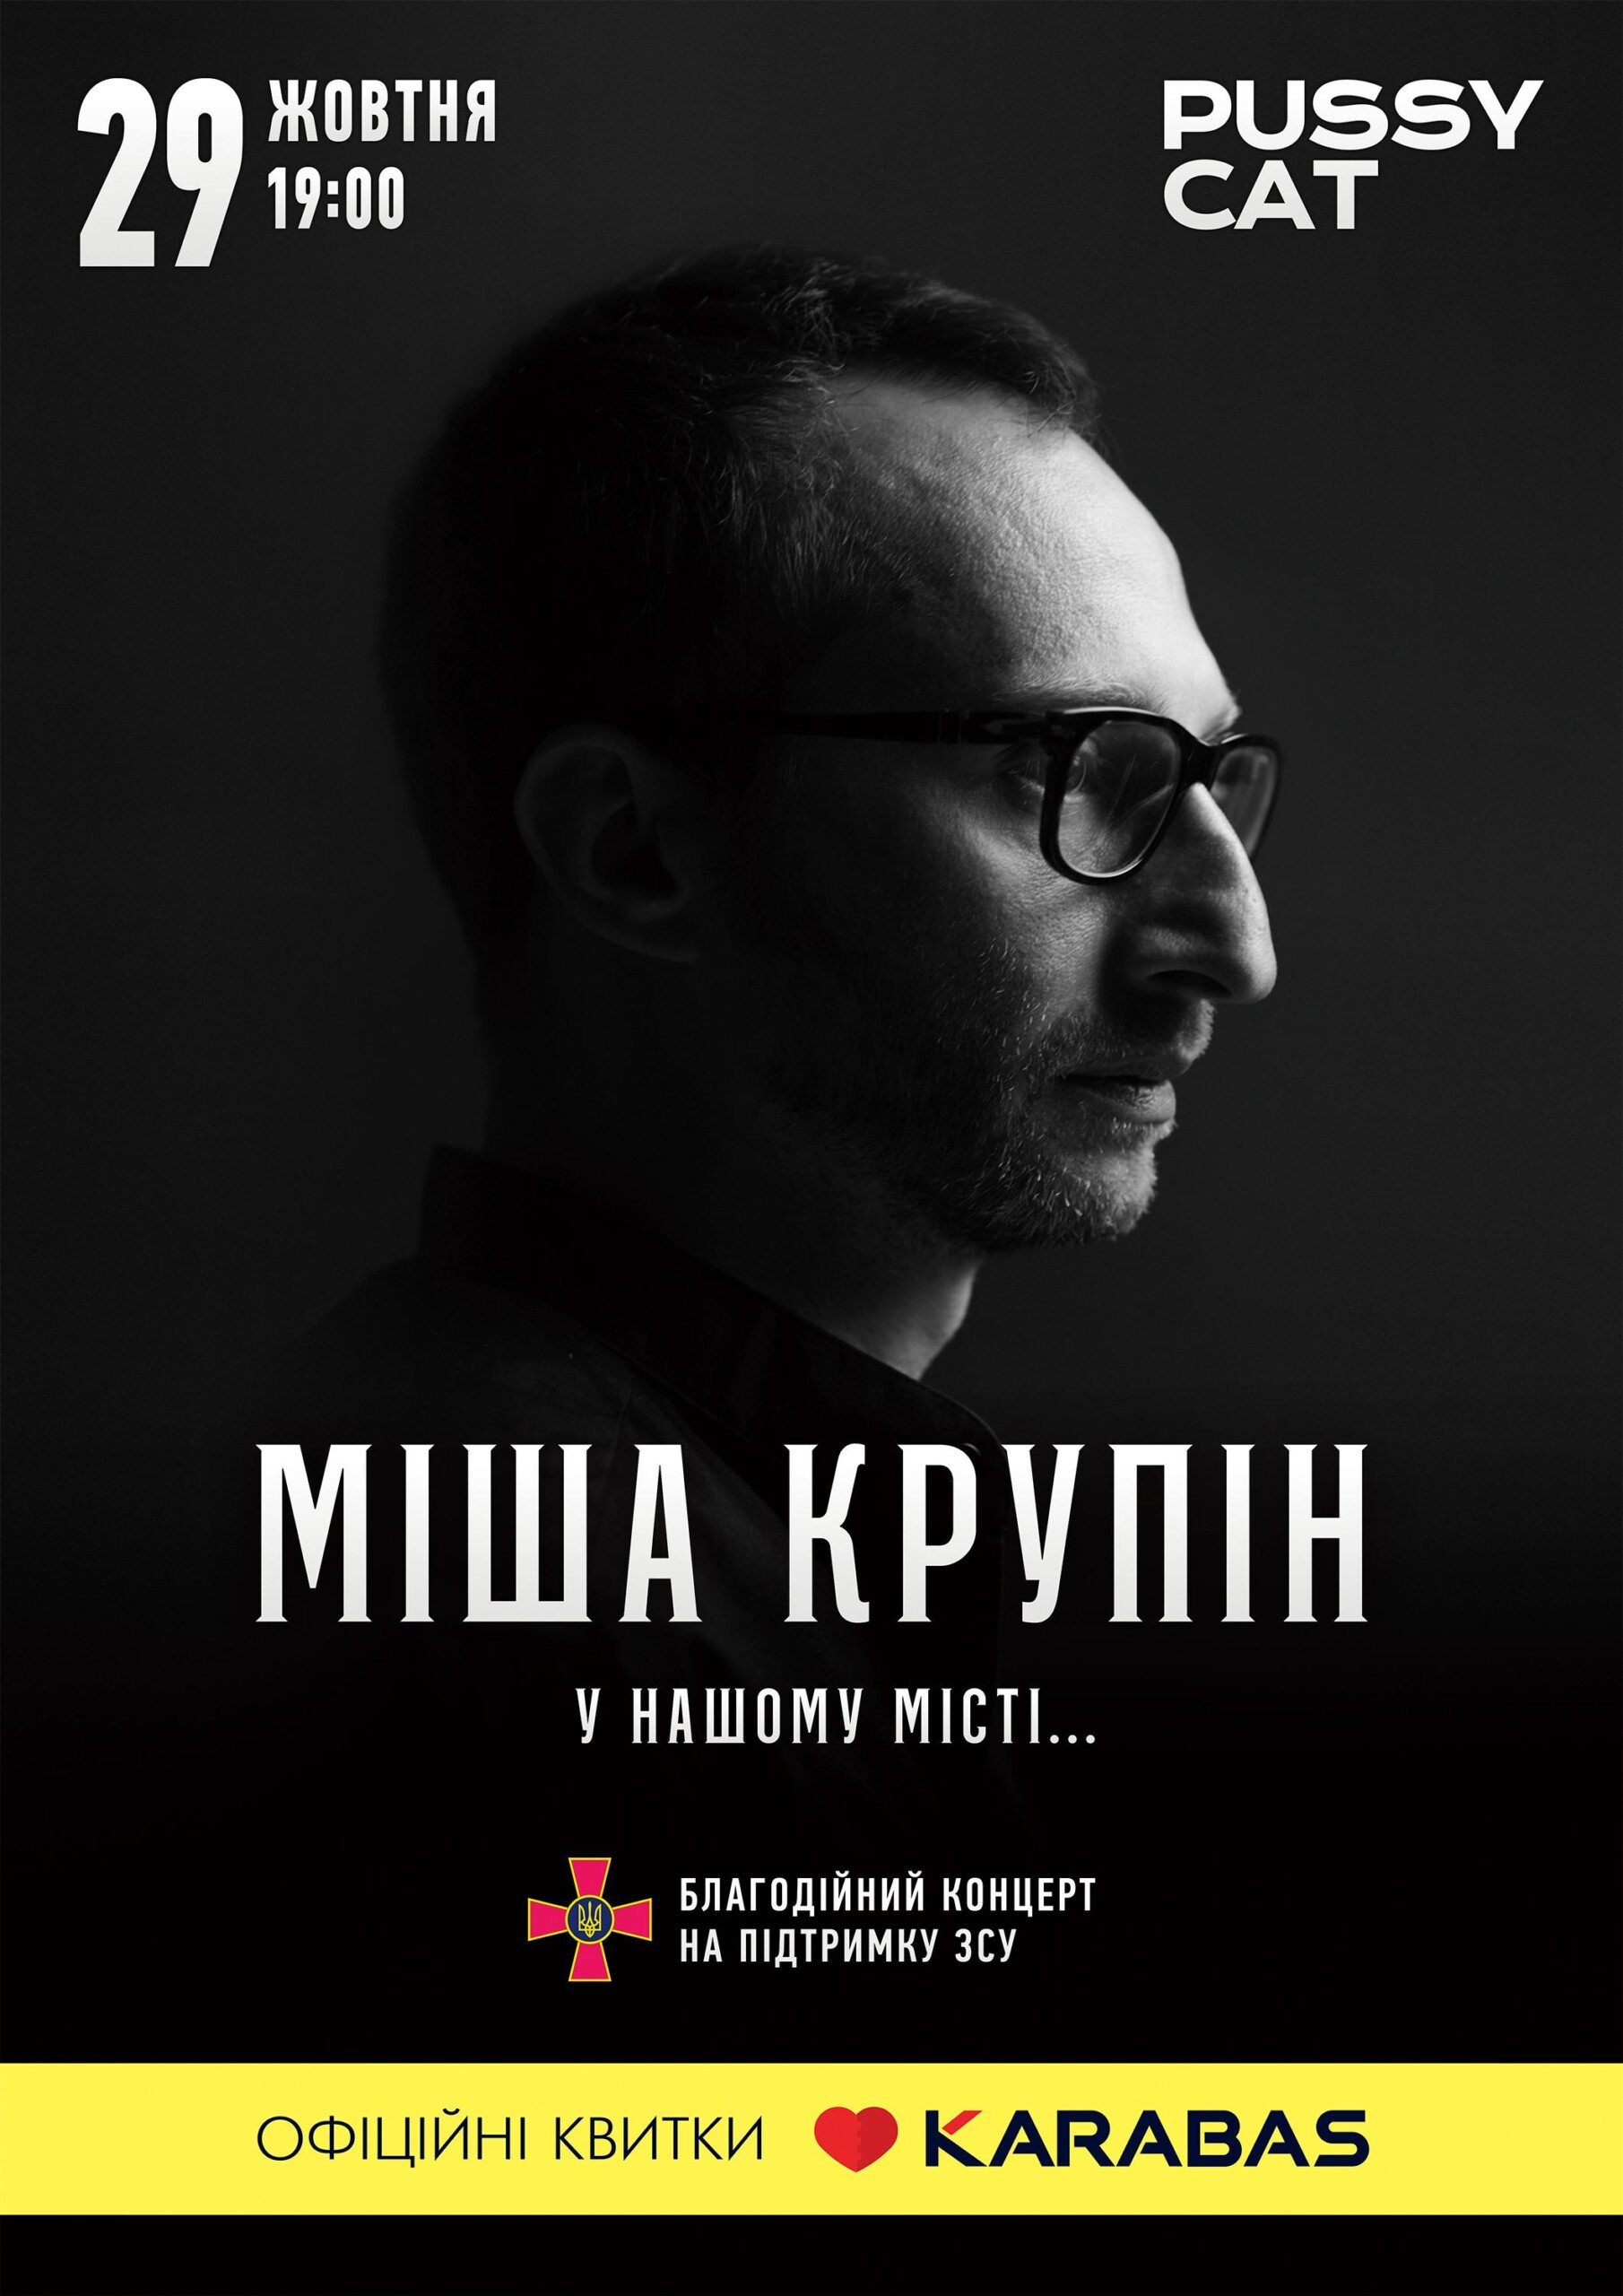 Гарячий концерт і аукціон на підтримку ЗСУ: у суботу Міша Крупін дасть драйву у Чернігові